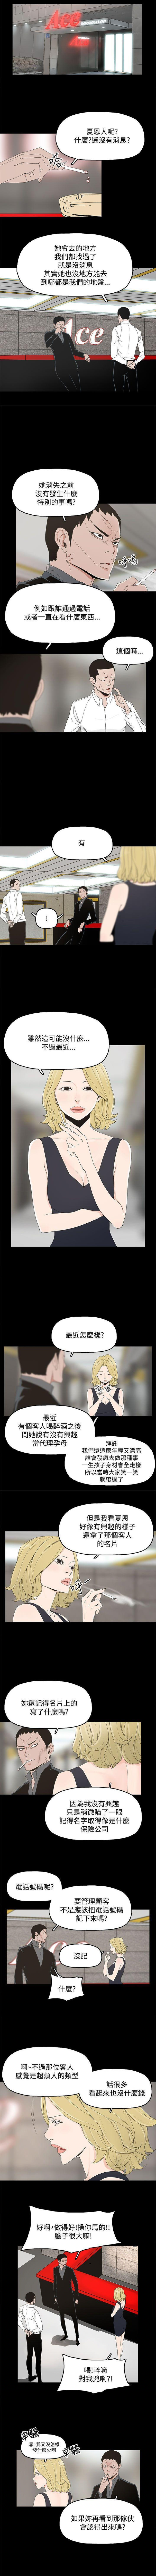 Passion 代理孕母 7 [Chinese] Manhwa Art - Page 6